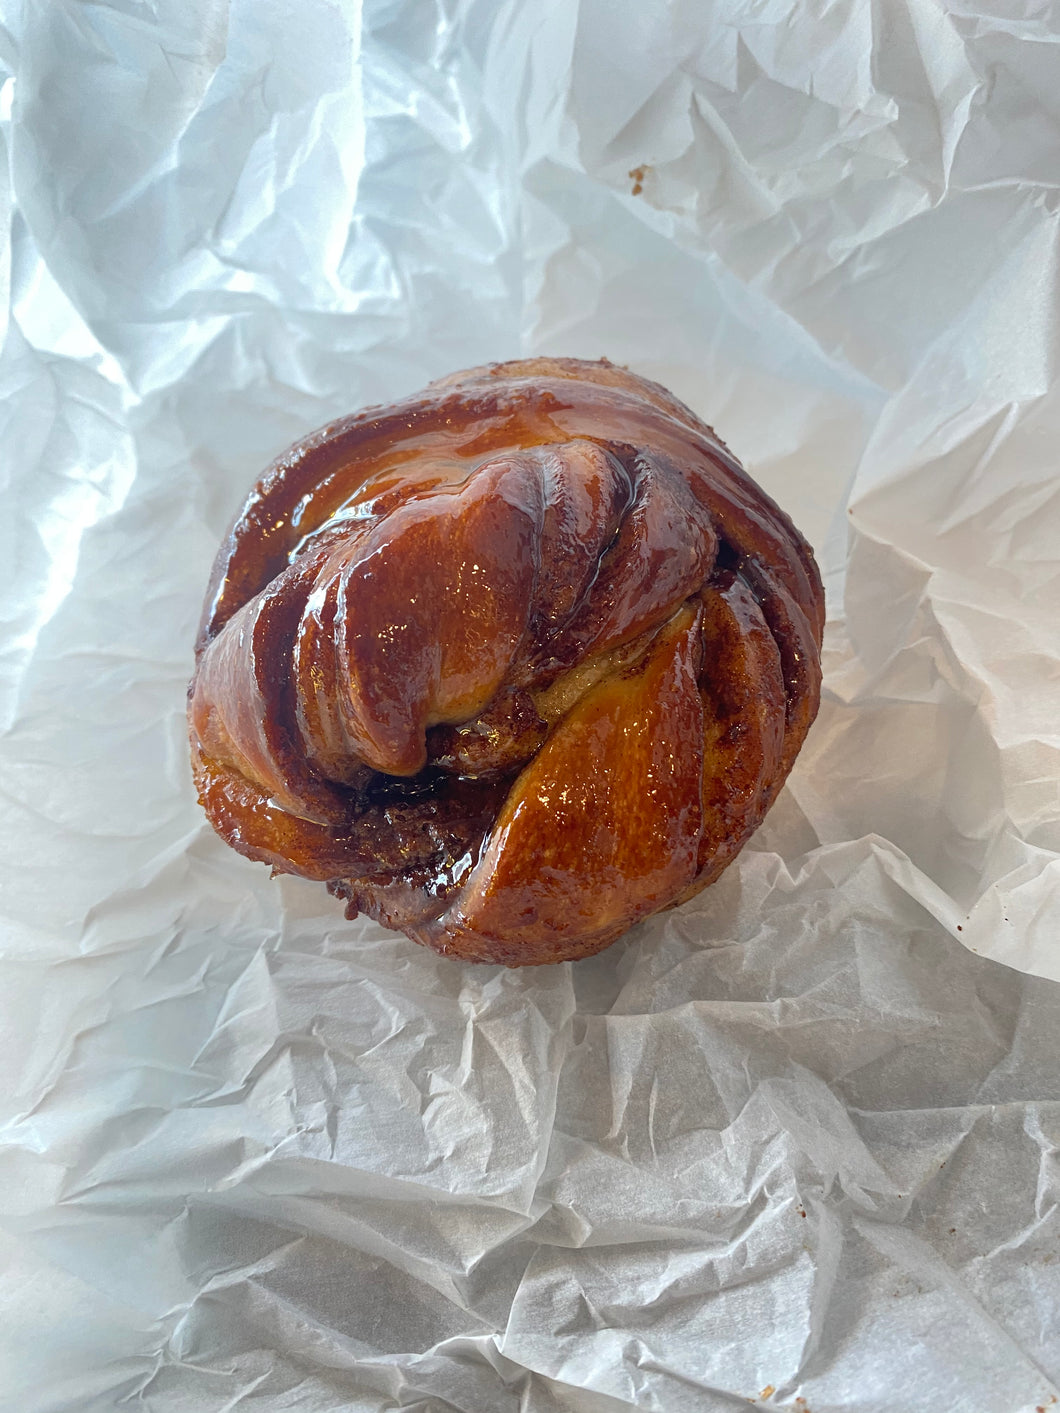 Cinnamon bun - Breadfern Bakery